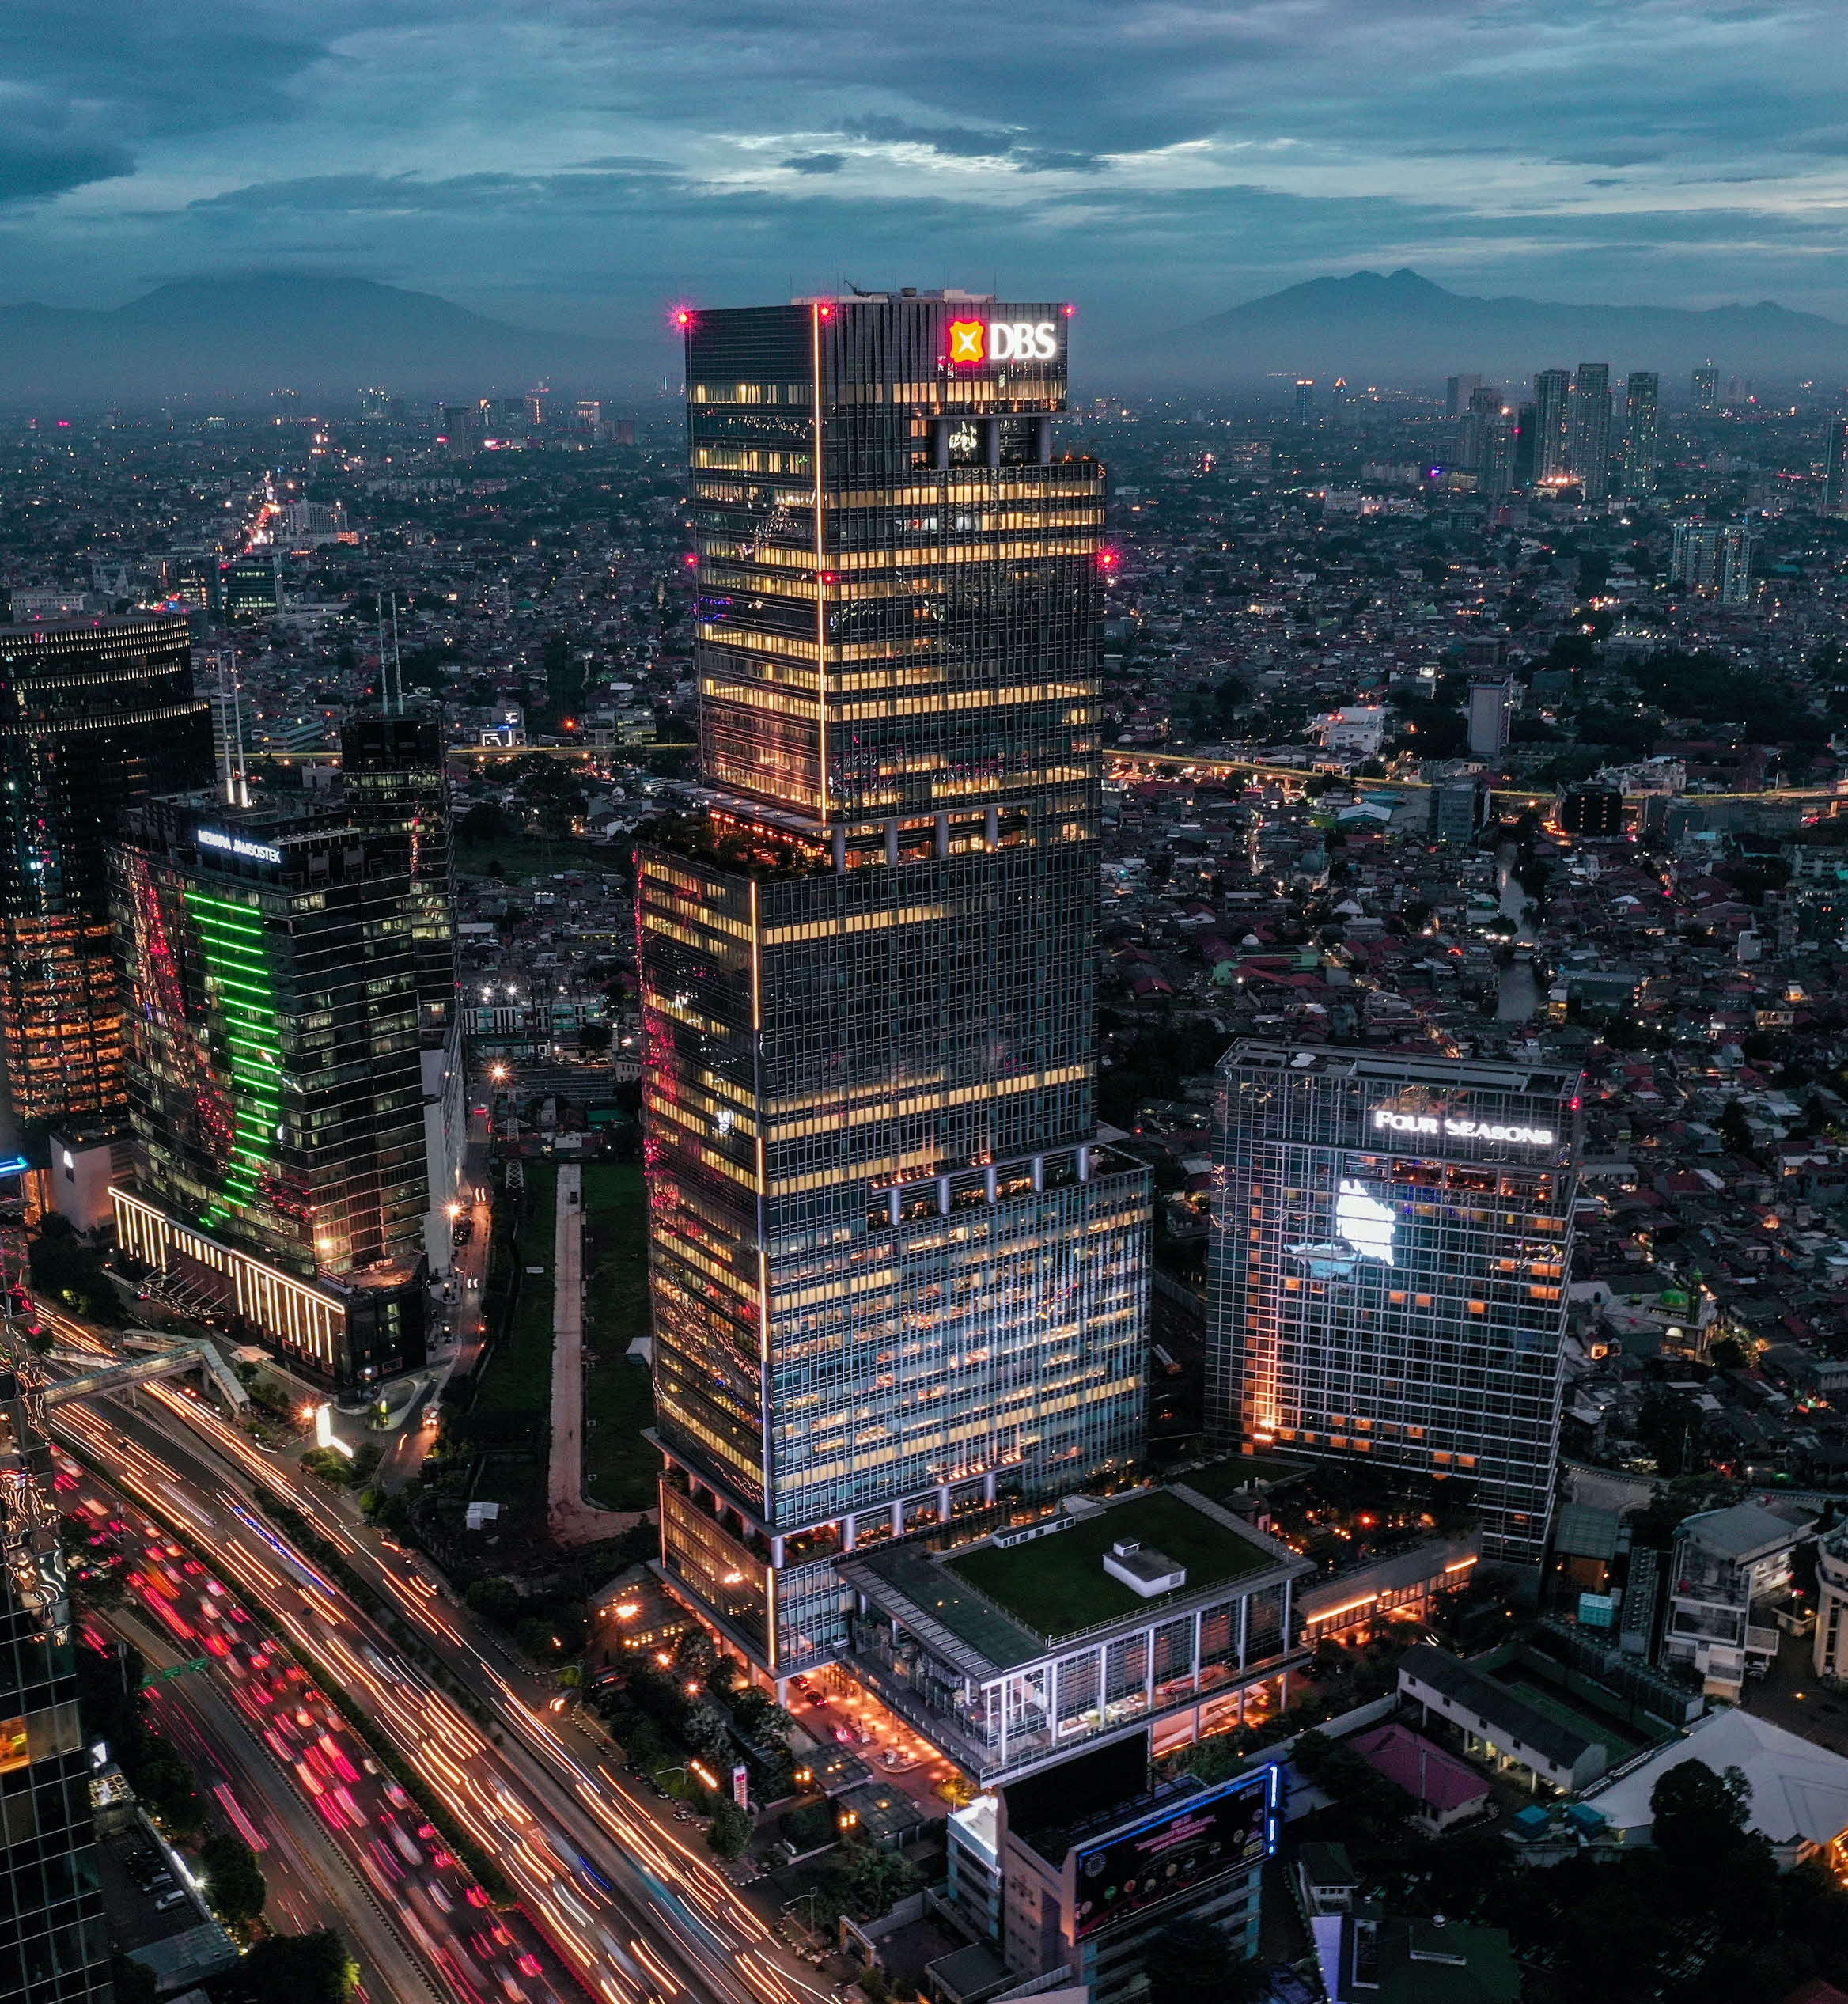 Bank DBS Indonesia Perkuat Kerja Sama Korporasi Lintas Sektor